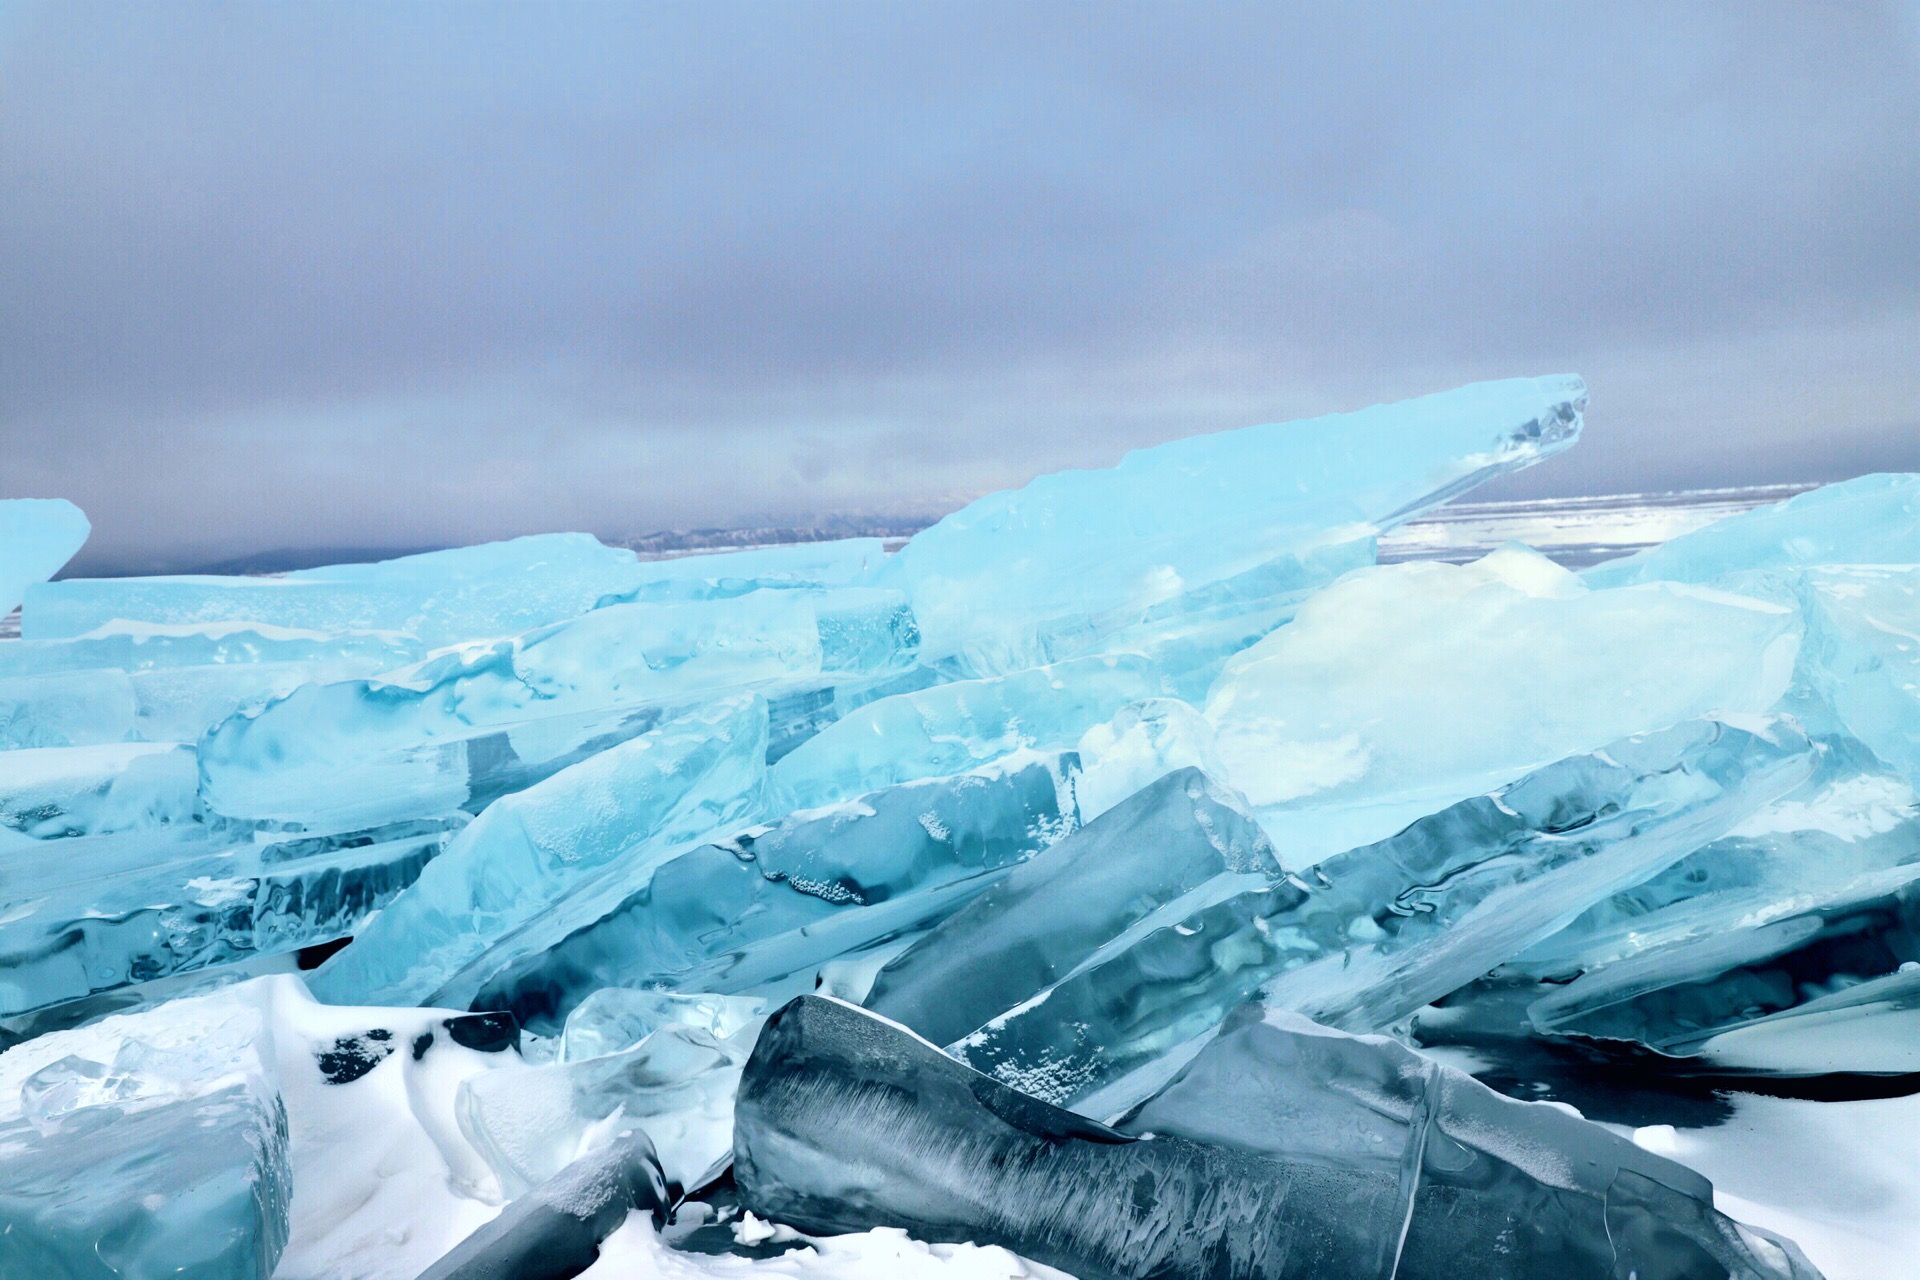 ❤️终于来了！西伯利亚蓝眼睛｜贝加尔湖蓝冰之旅❄️  贝加尔湖有世界上最干净最纯洁最美的蓝冰； 也有